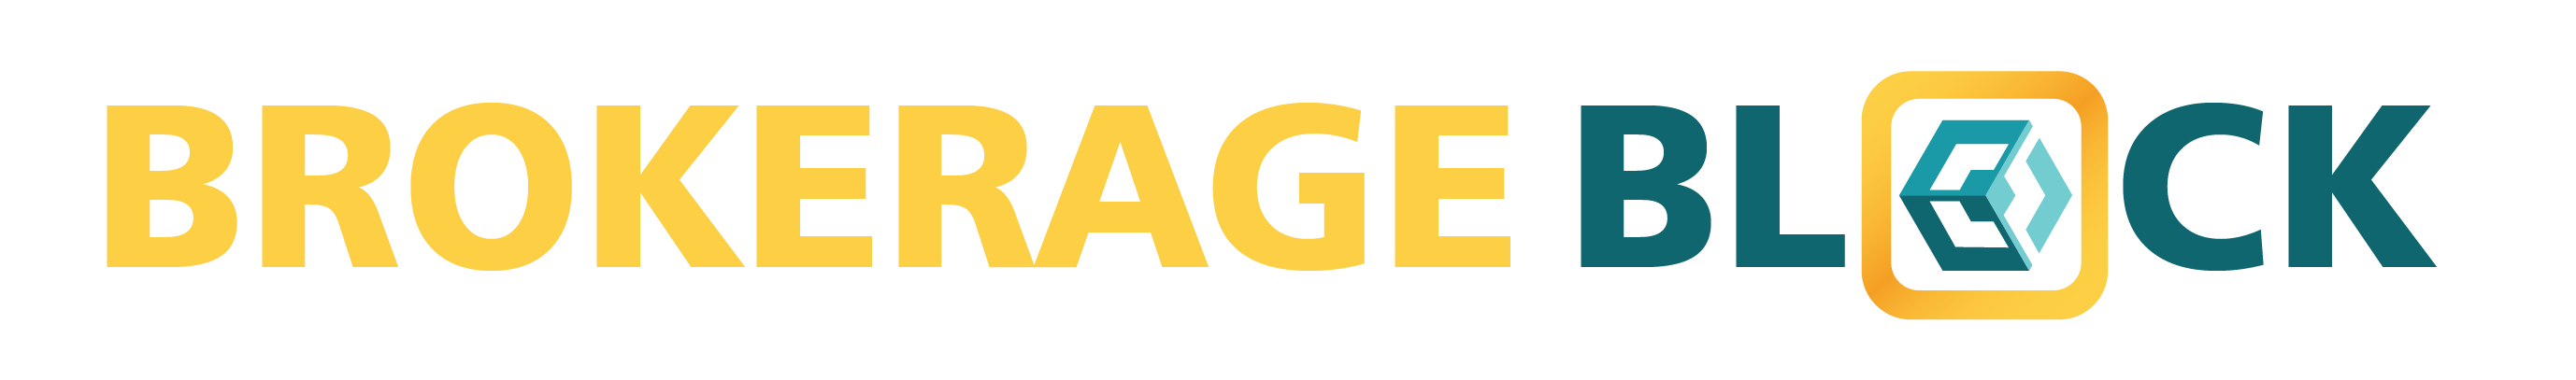 Brokerage Block Logo